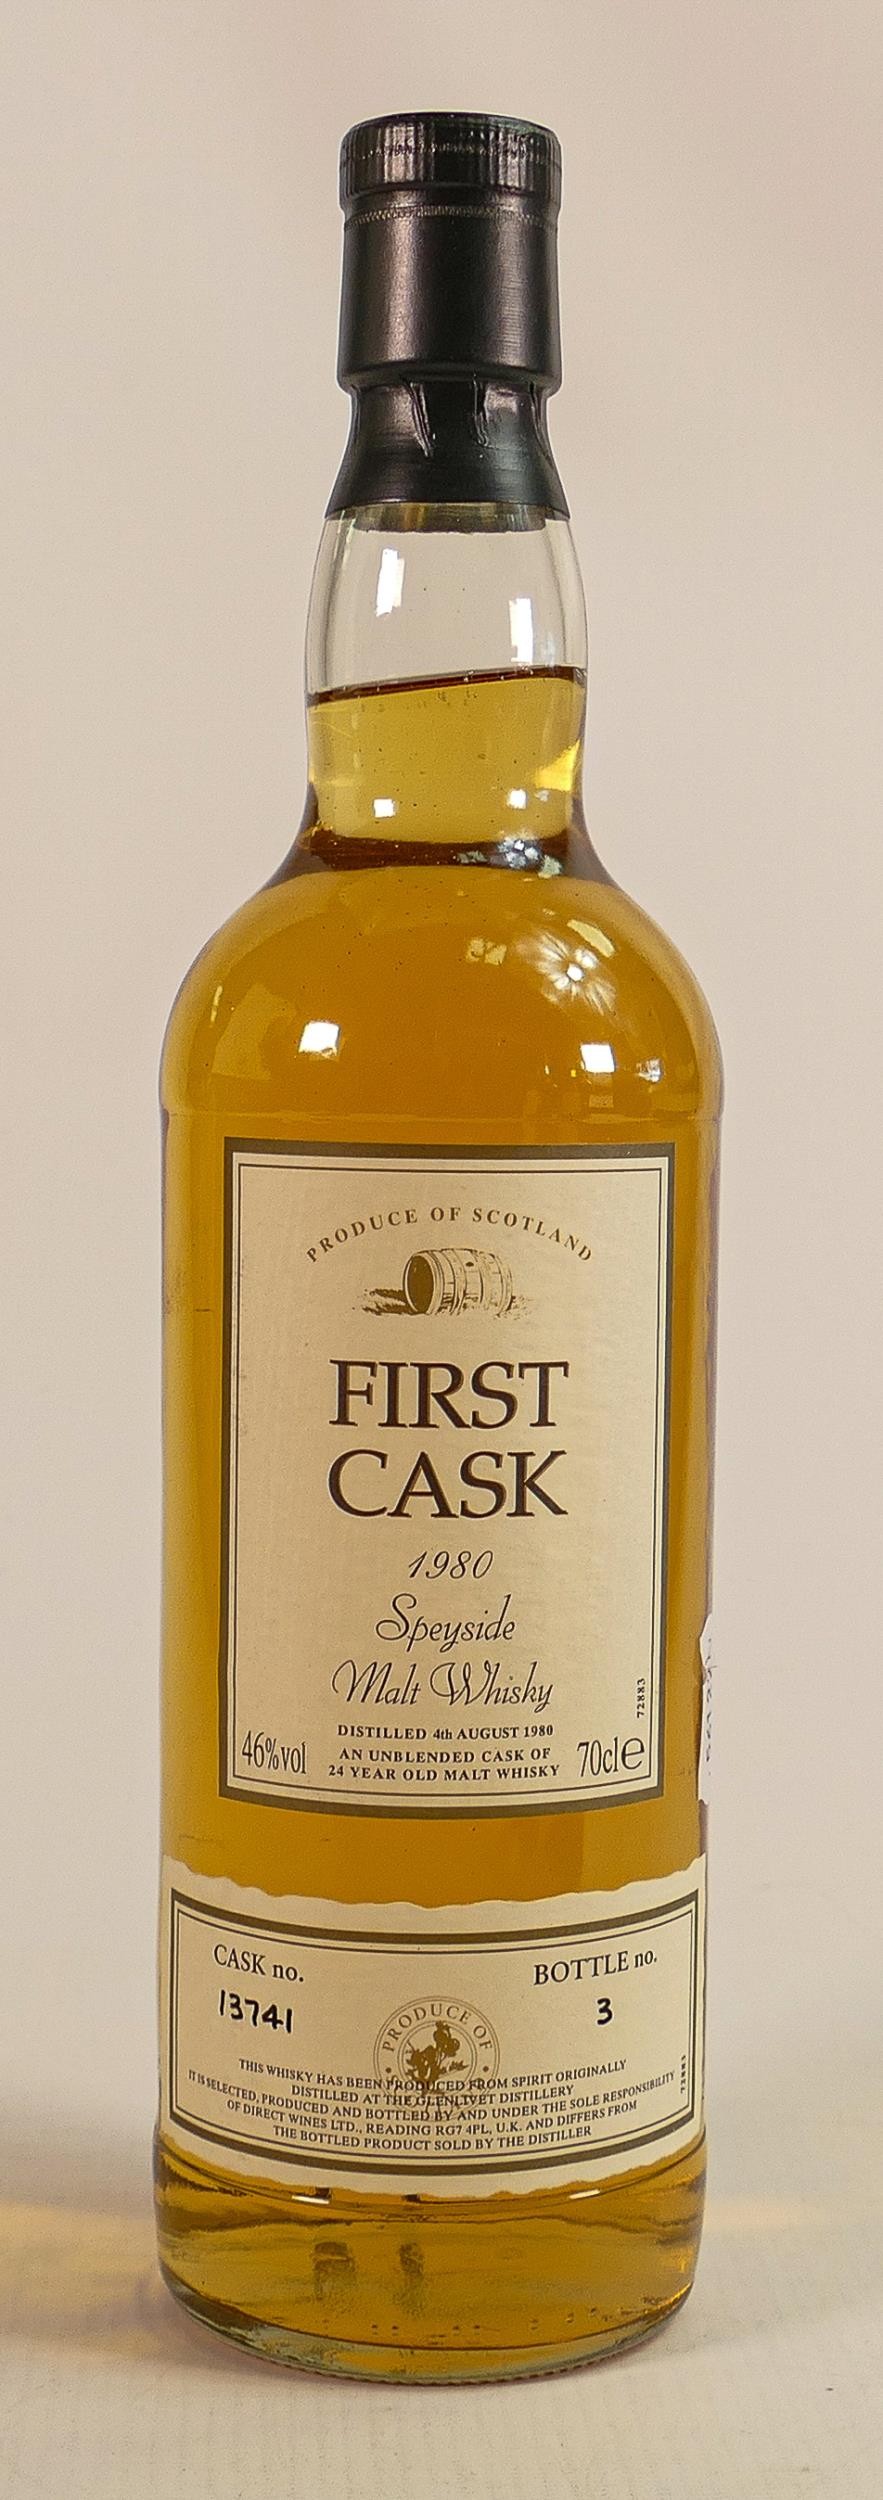 A 70cl bottle of First Cask 1980 Speyside malt Whisky. Cask number 13741, bottle number 3.